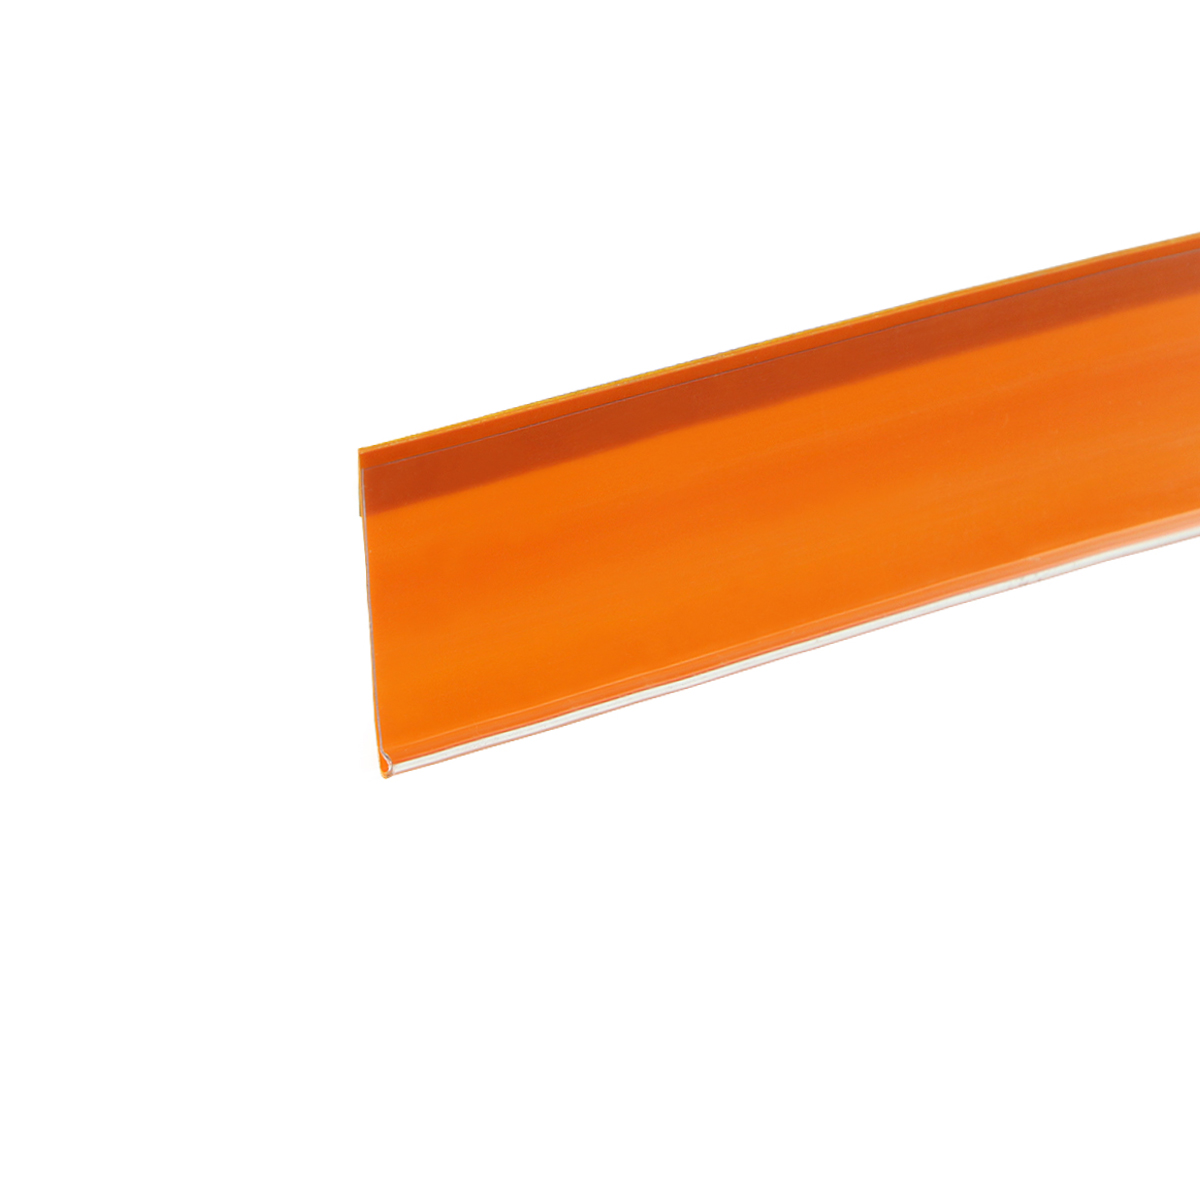 Ценникодержатель полочный самоклеящийся DBR39 SL длина 1250 мм., цвет оранжевый